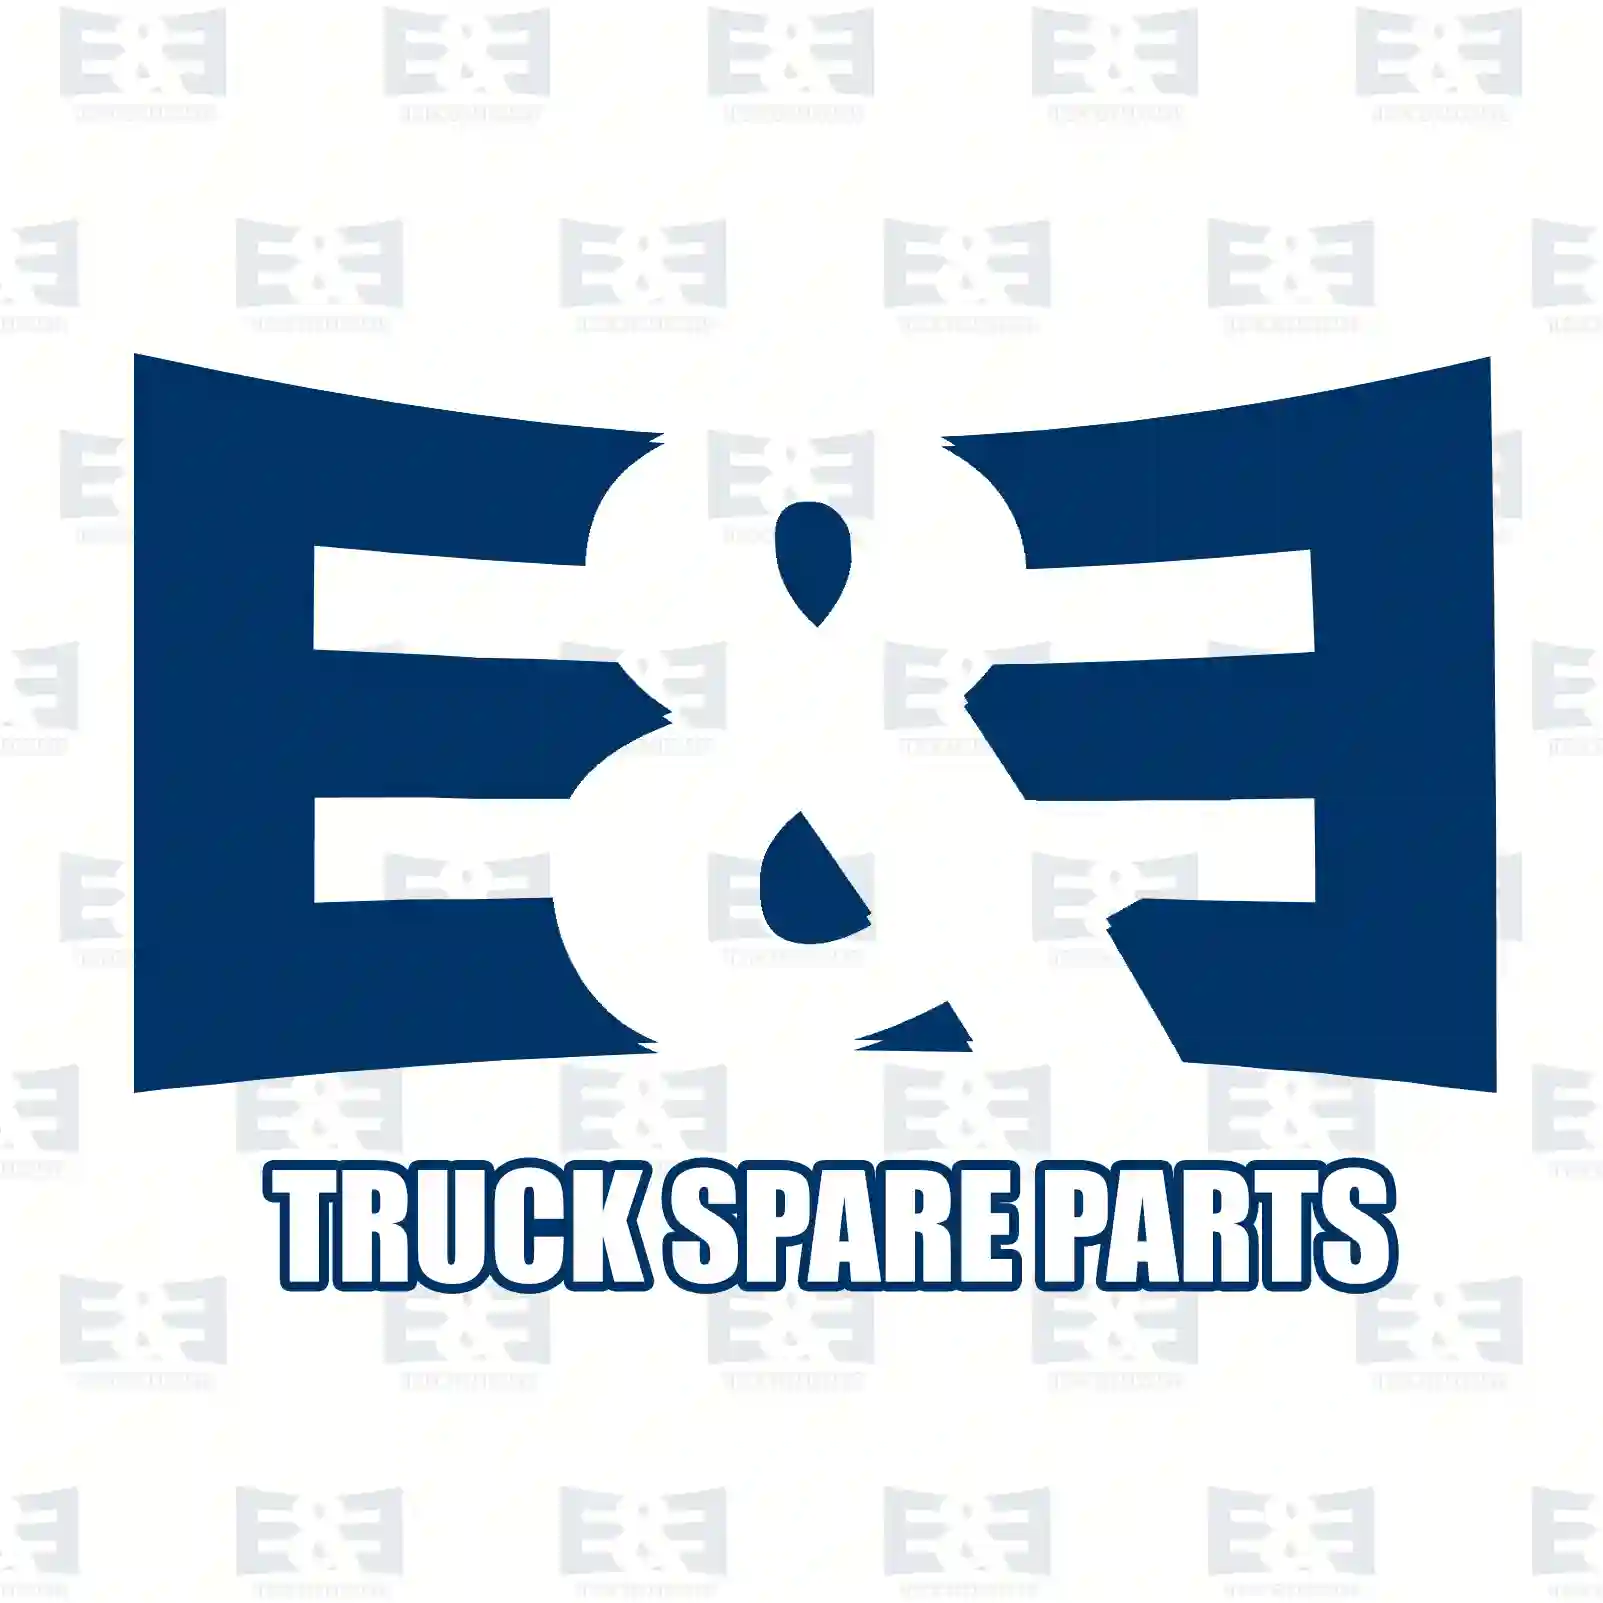 Brake cylinder, 2E2294998, 20438479, 8147440, , ||  2E2294998 E&E Truck Spare Parts | Truck Spare Parts, Auotomotive Spare Parts Brake cylinder, 2E2294998, 20438479, 8147440, , ||  2E2294998 E&E Truck Spare Parts | Truck Spare Parts, Auotomotive Spare Parts